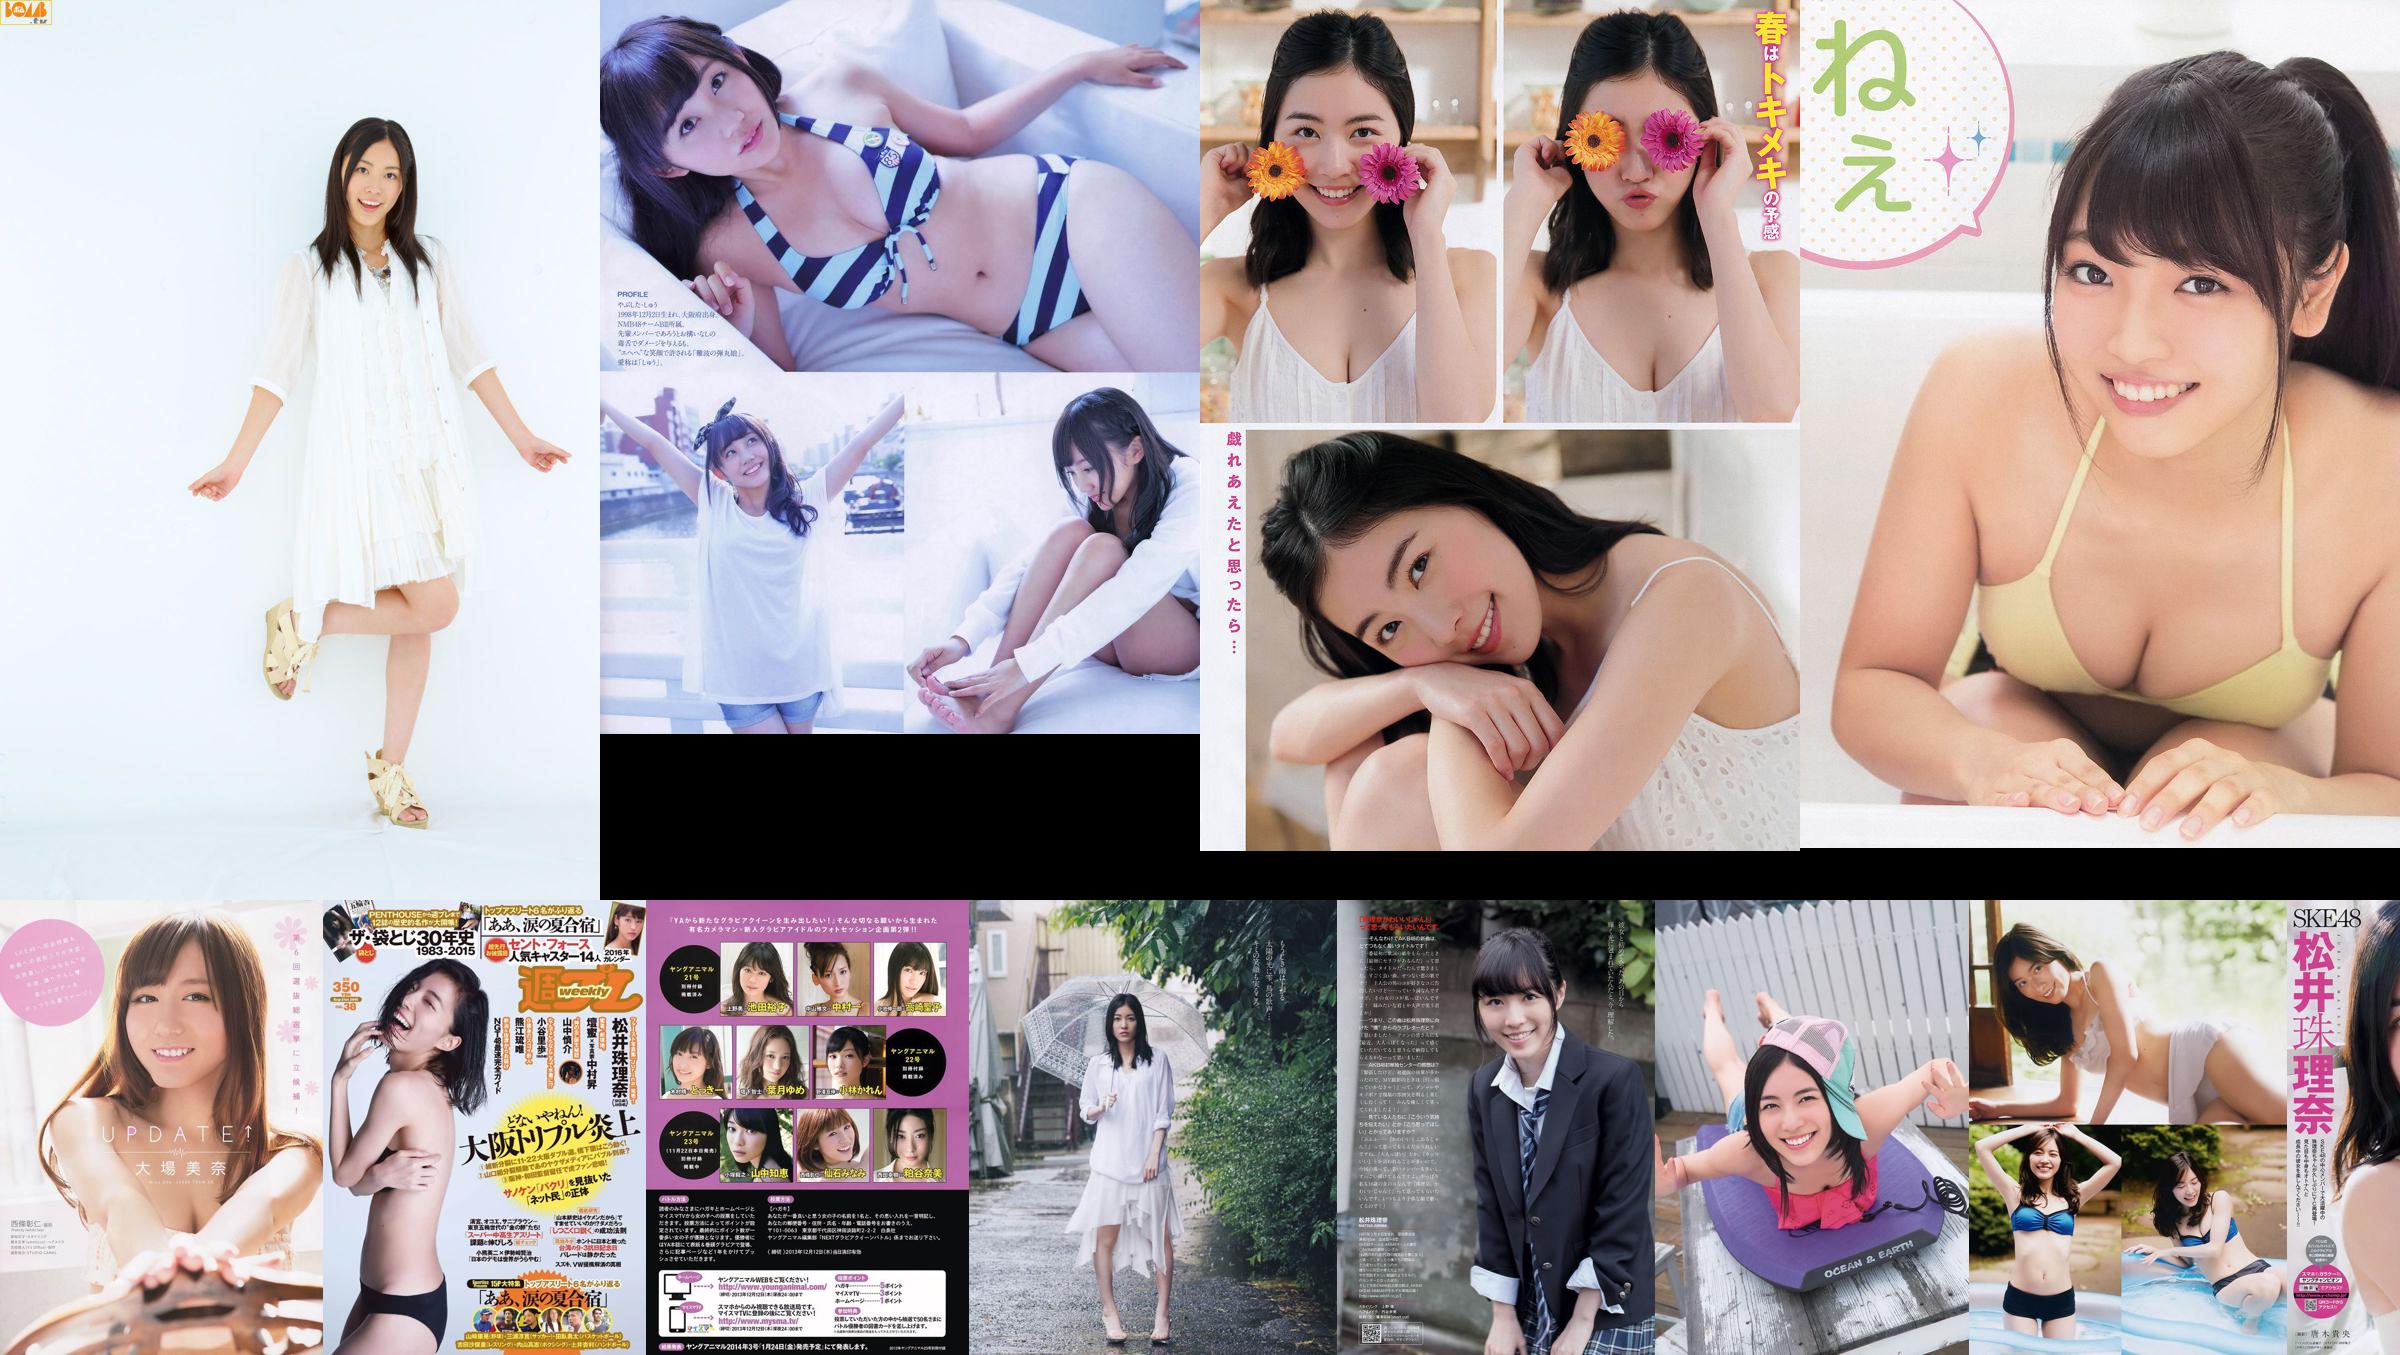 [นิตยสารบอมบ์] 2014 No.07 Matsui Jurina Watanabe Miyuki Koshima Mako Iriyama Princess Sato Photo magazine No.730e79 หน้า 1